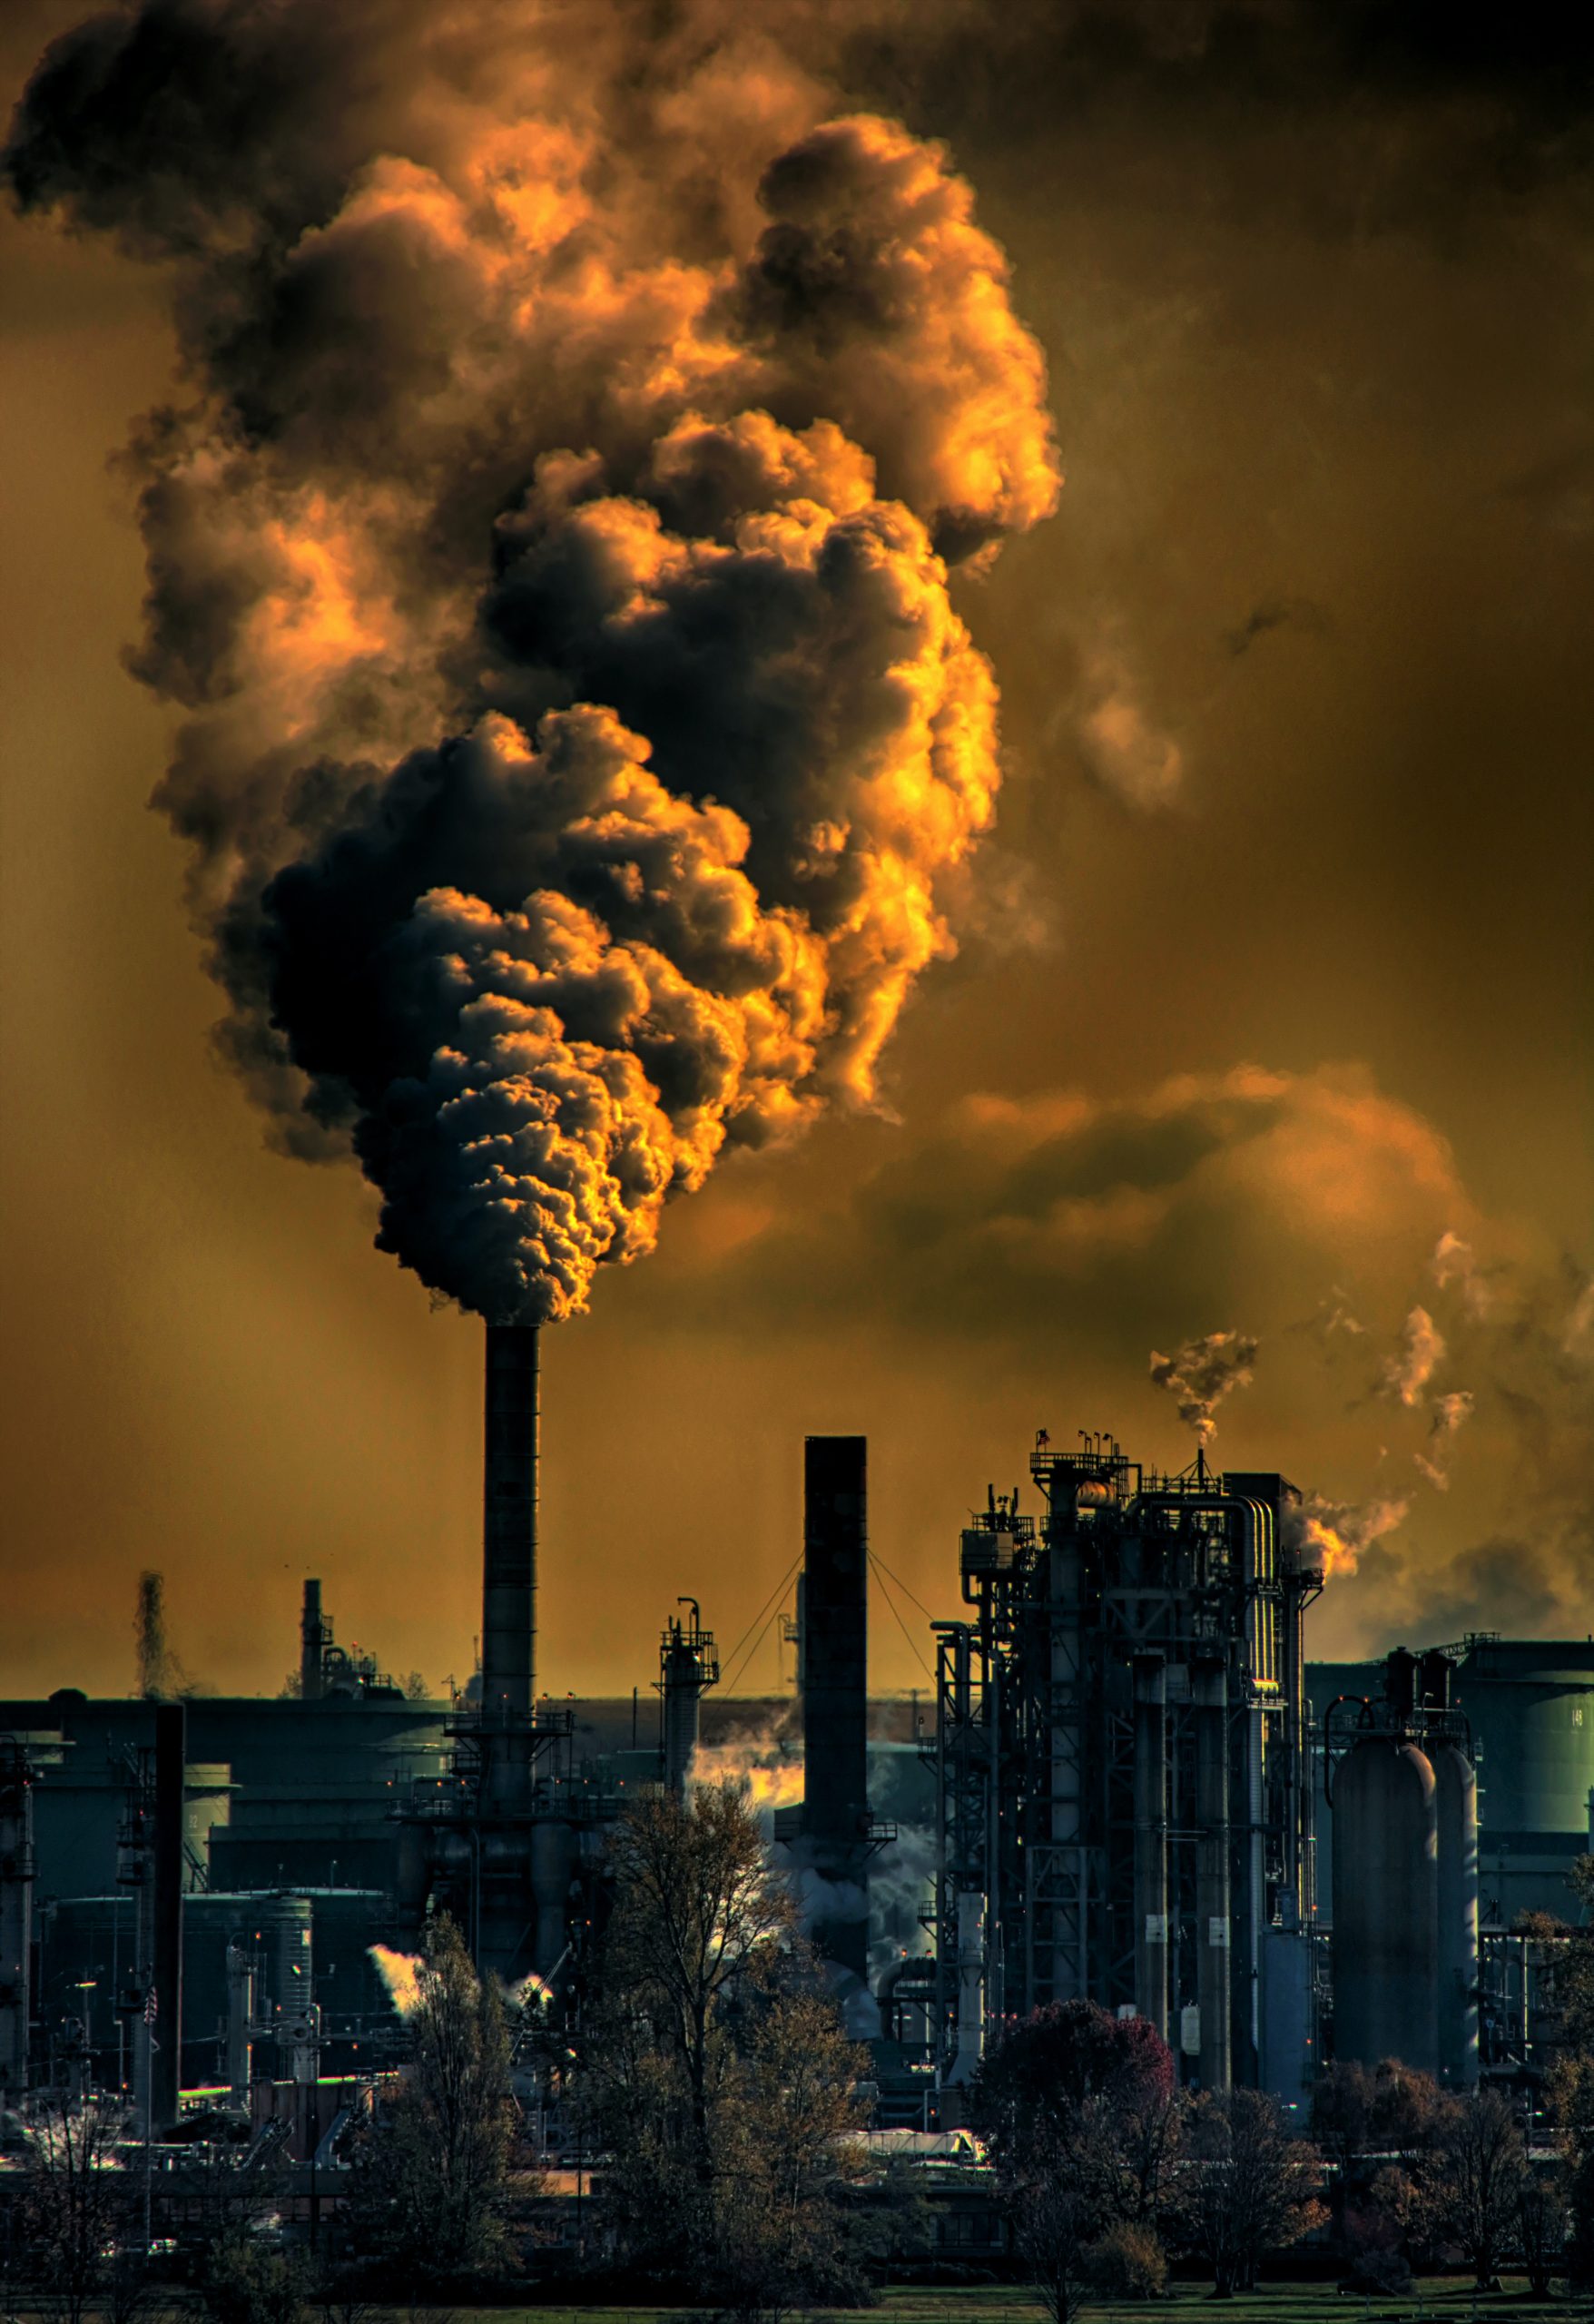 A fosszilis energiahordozókégetése számos környezetszennyező anyagot juttat a légkörbe